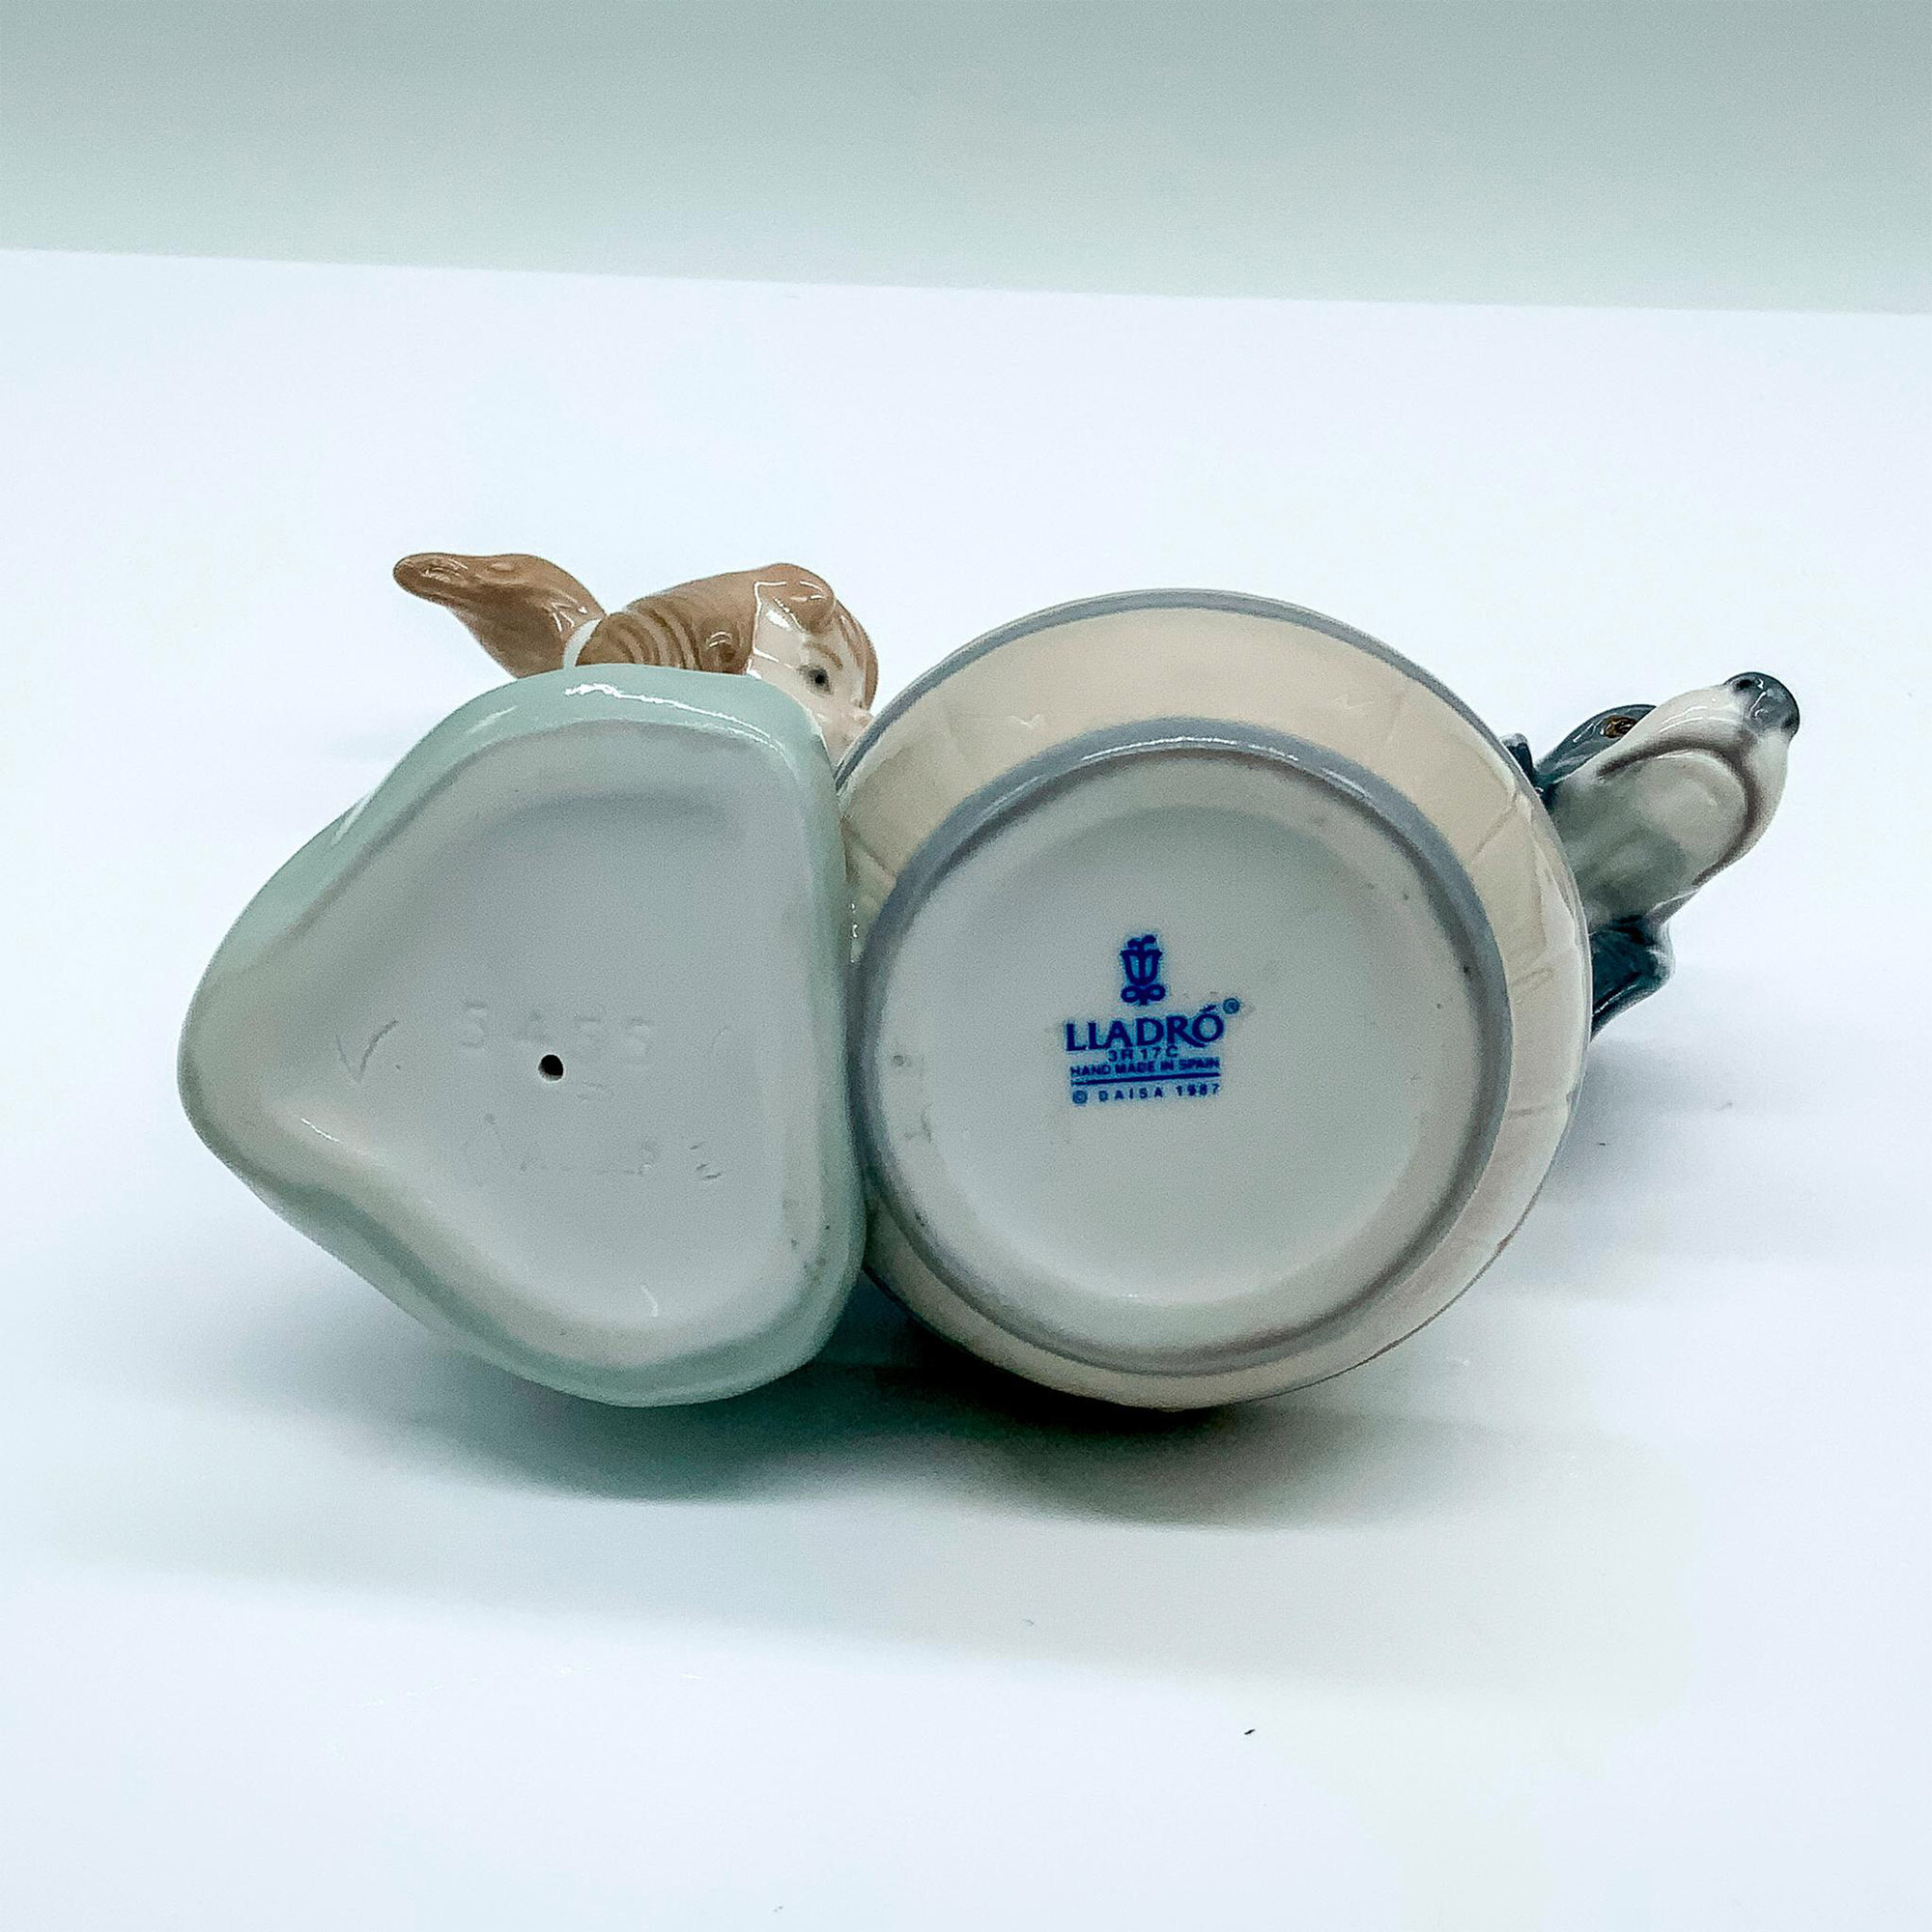 Bashful Bather 1005455 - Lladro Porcelain Figurine - Image 4 of 4